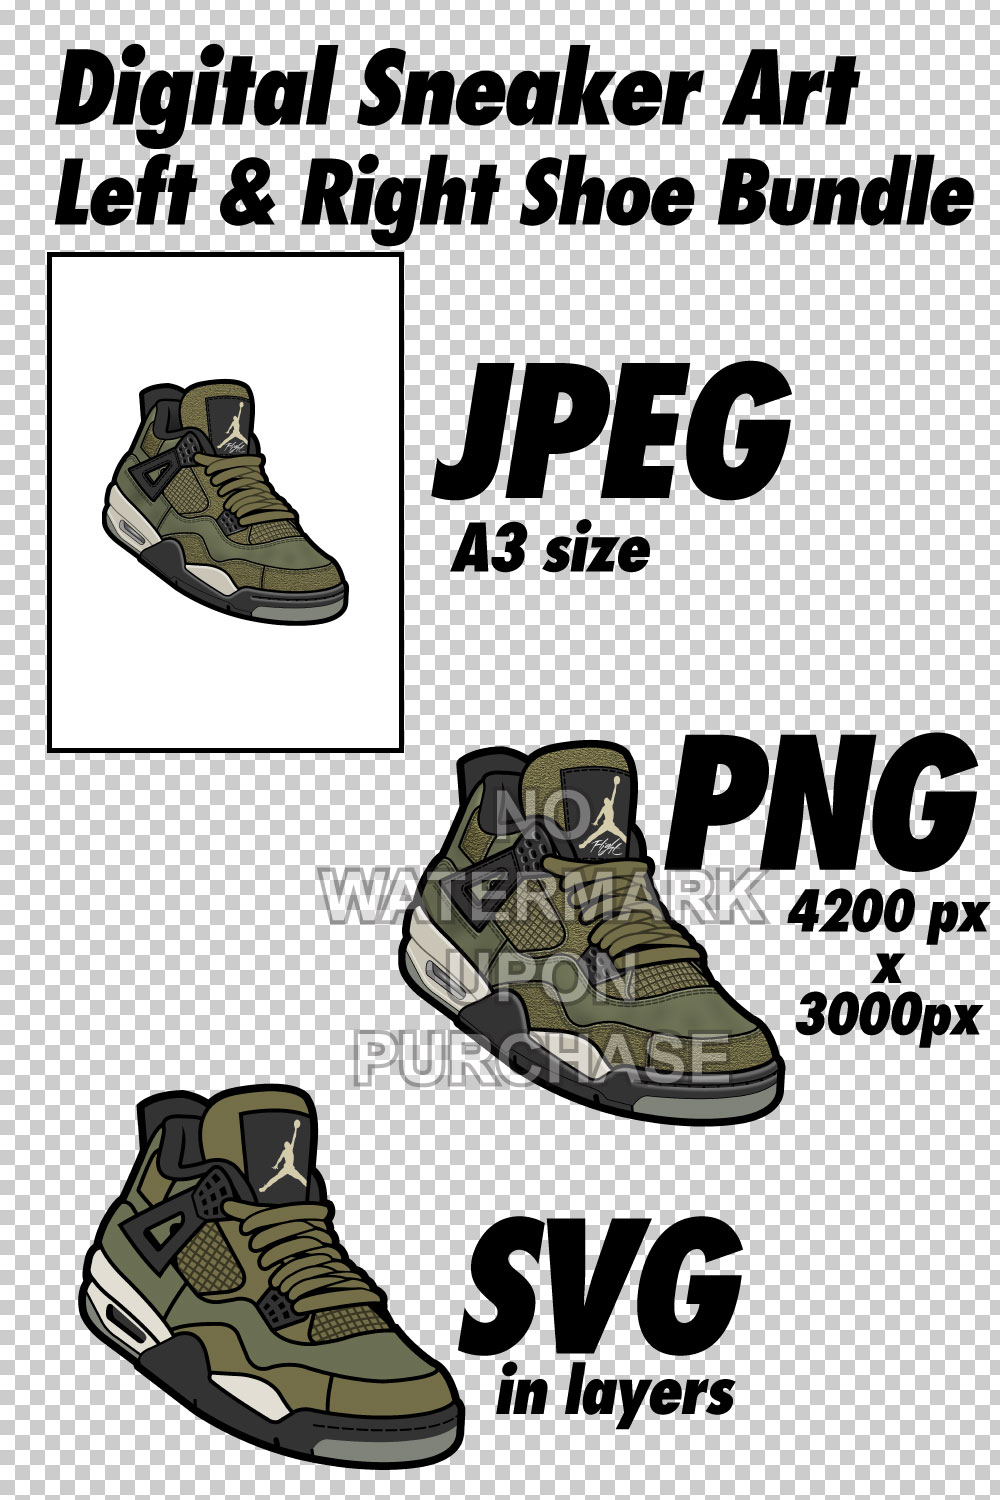 Air Jordan 4 Craft Olive JPEG PNG SVG Left & Right Shoe Bundle pinterest preview image.